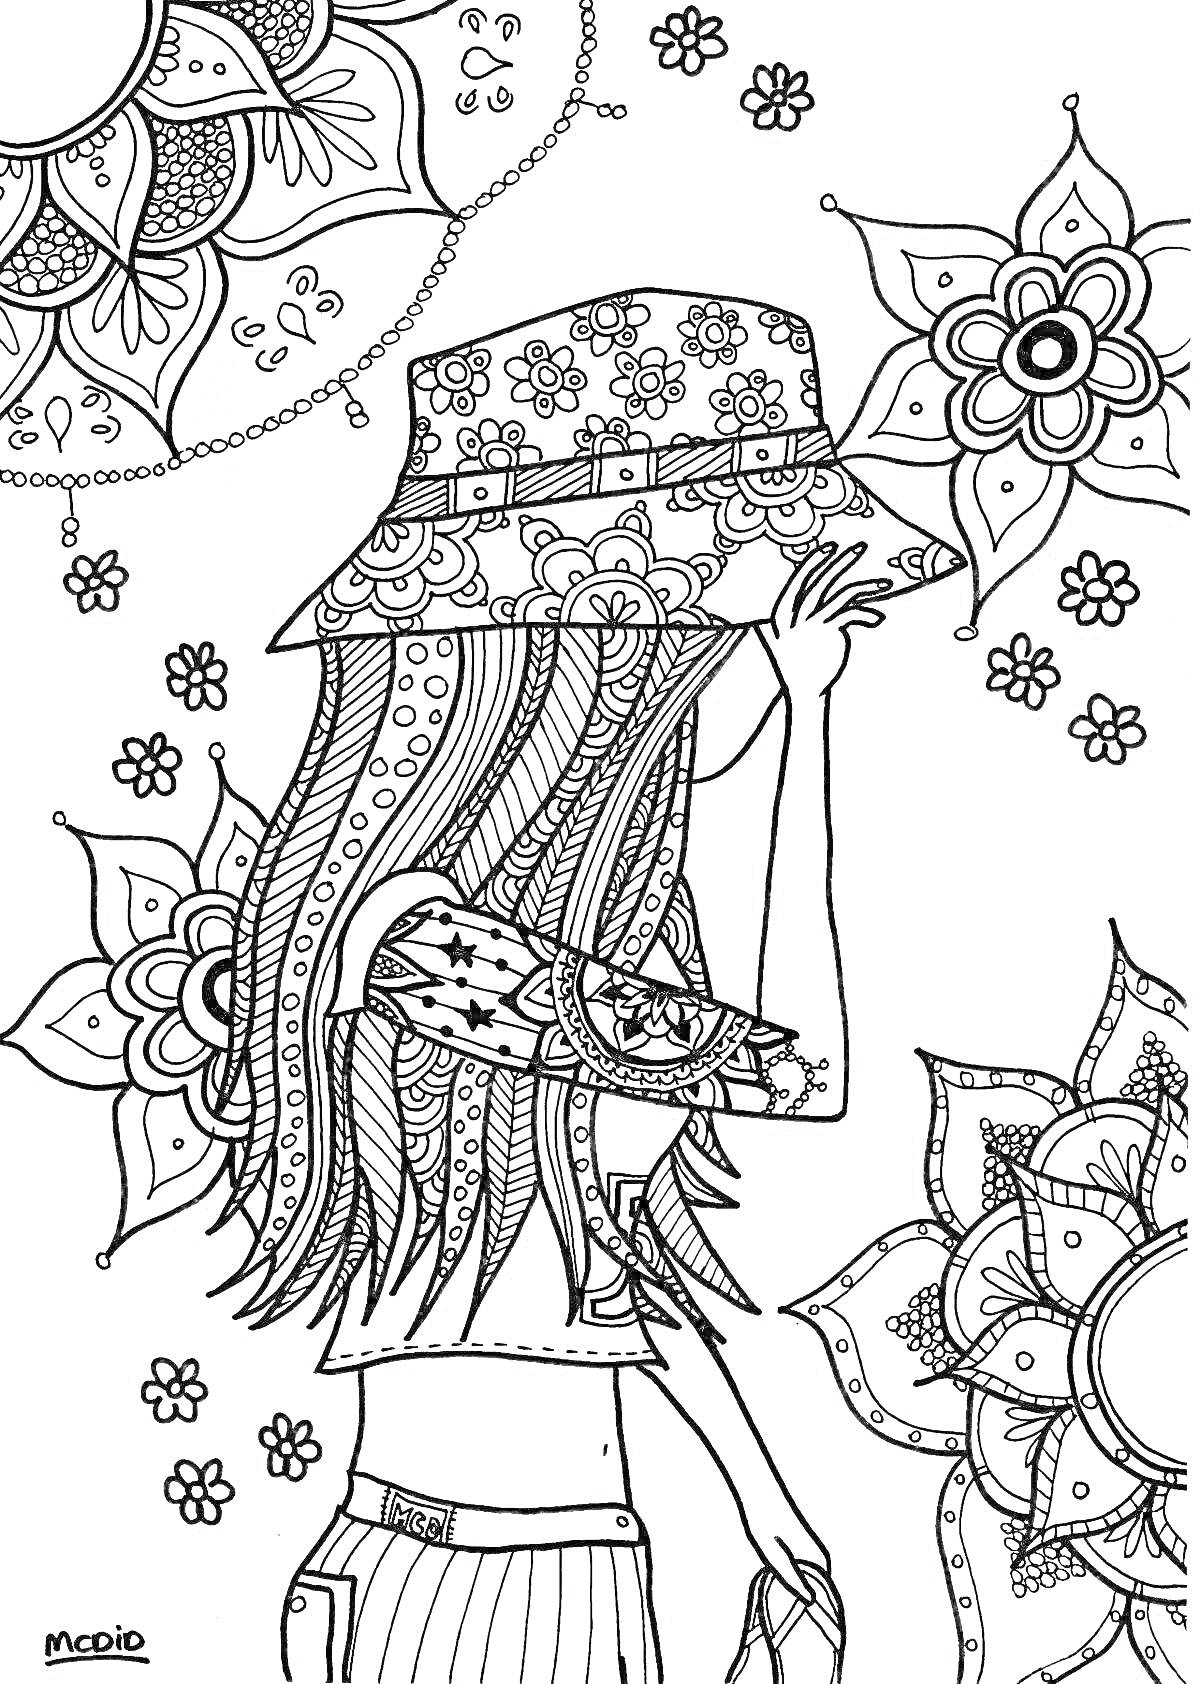 Раскраска Девушка-хиппи в шляпе с цветочным орнаментом, замысловатый фон с мандалами и маленькими цветами